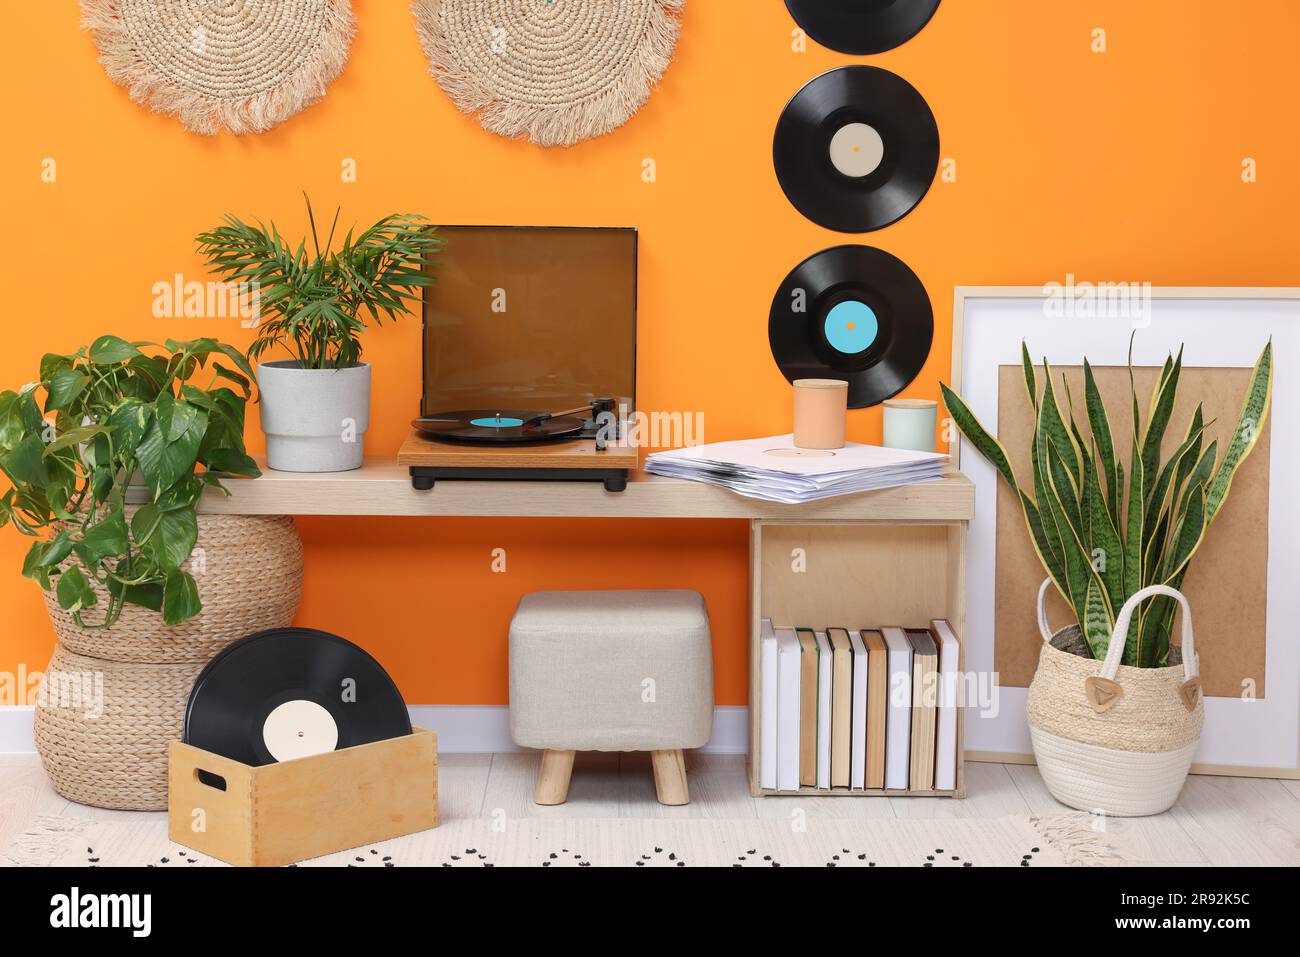 Stilvoller Plattenspieler mit Schallplatte auf dem Konsolentisch in einem gemütlichen Zimmer Stockfoto